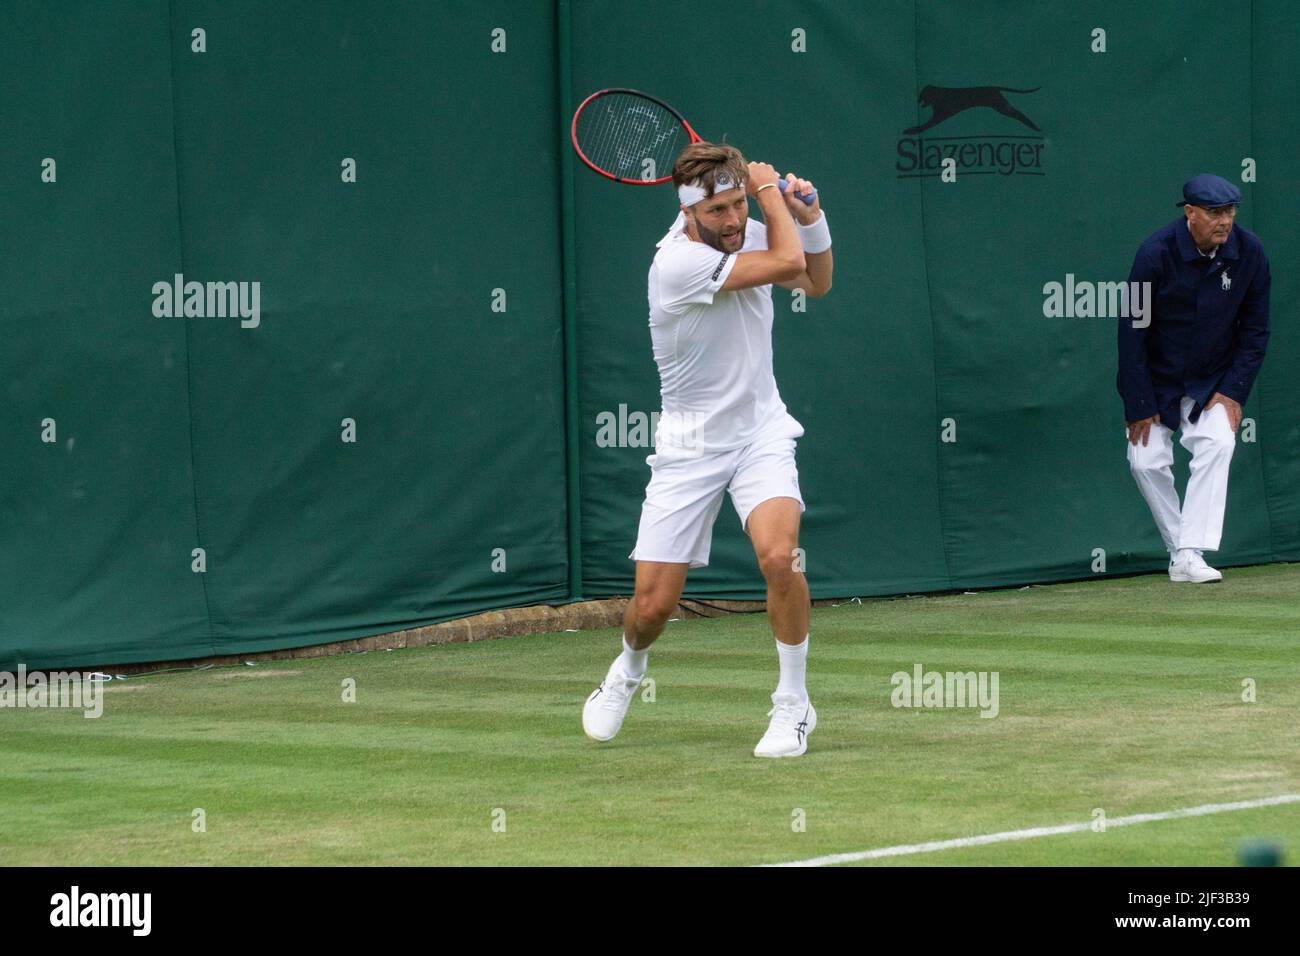 Wimbledon, Reino Unido, 28 de junio de 2022: El tenista británico Liam Broady en acción en la cancha 17 en el campeonato de tenis de Wimbledon. El Stockport, nacido en 28 años, venció a Lukas Klein en 5 sets en la primera ronda del torneo. Noticias vivas de Anna Watson/Alamy Foto de stock